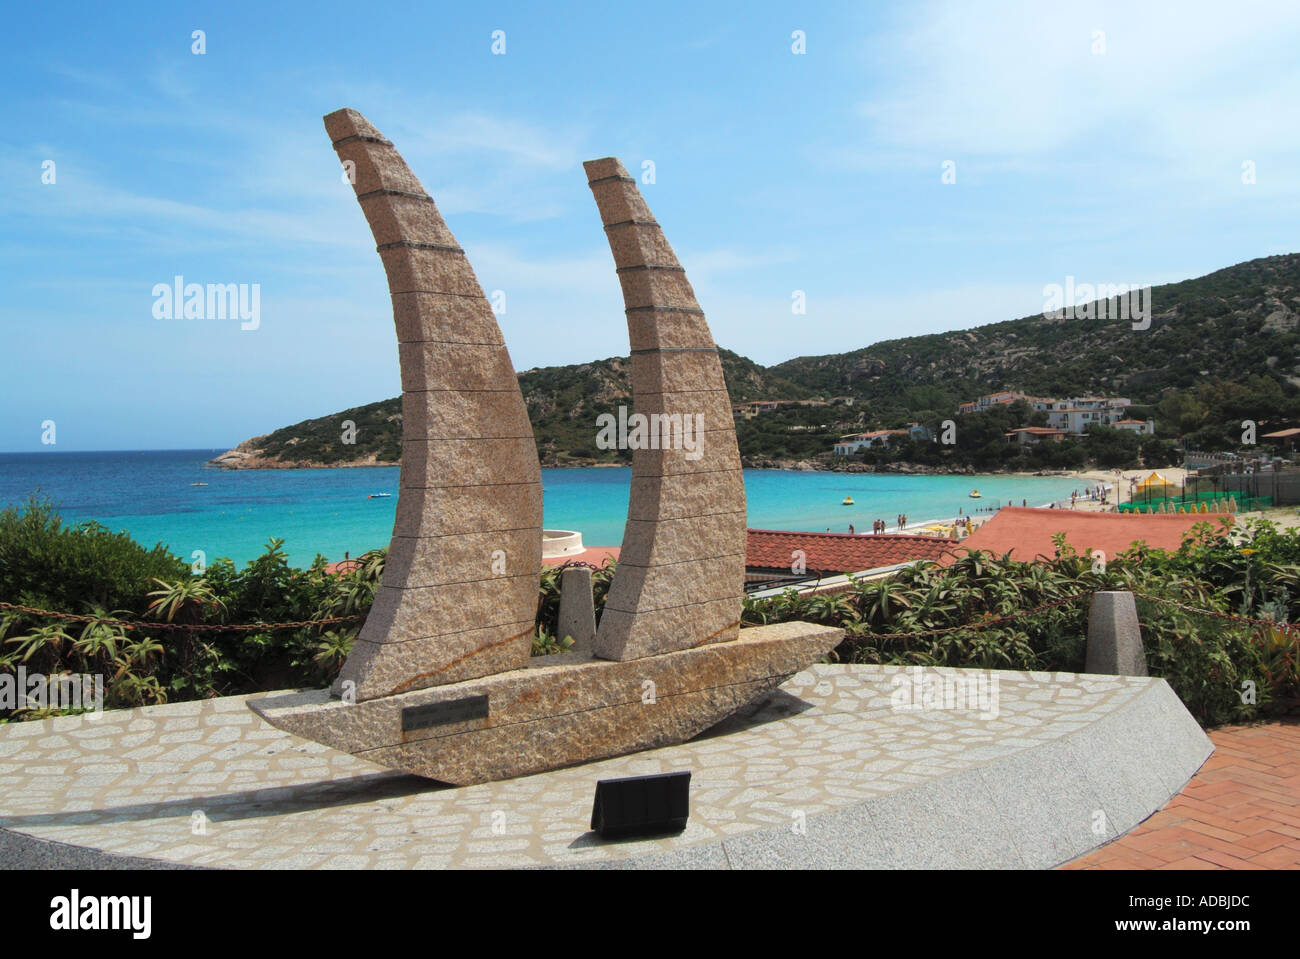 Baia Sardinia piccola stazione balneare moderna con barca a vela scultura Foto Stock